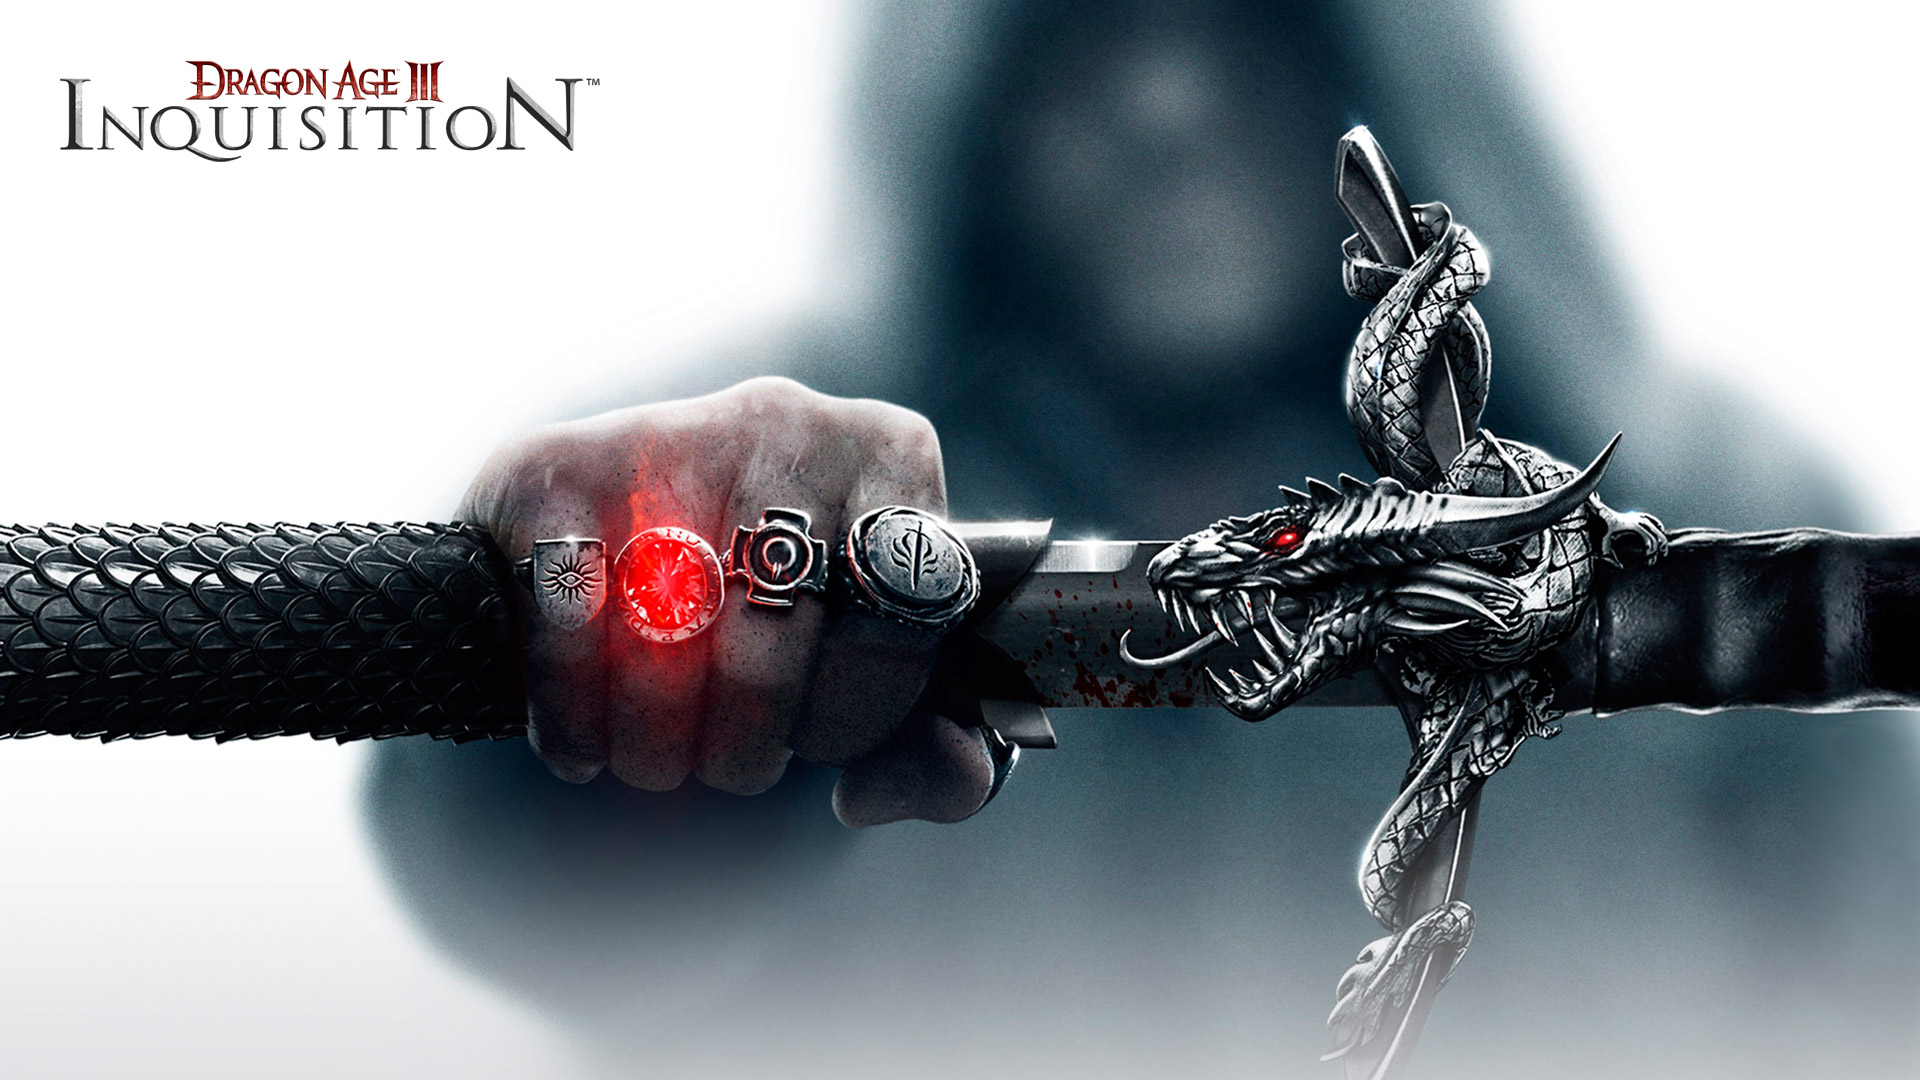 Wallpaper Dragon Age Inquisition Pc Xbox One